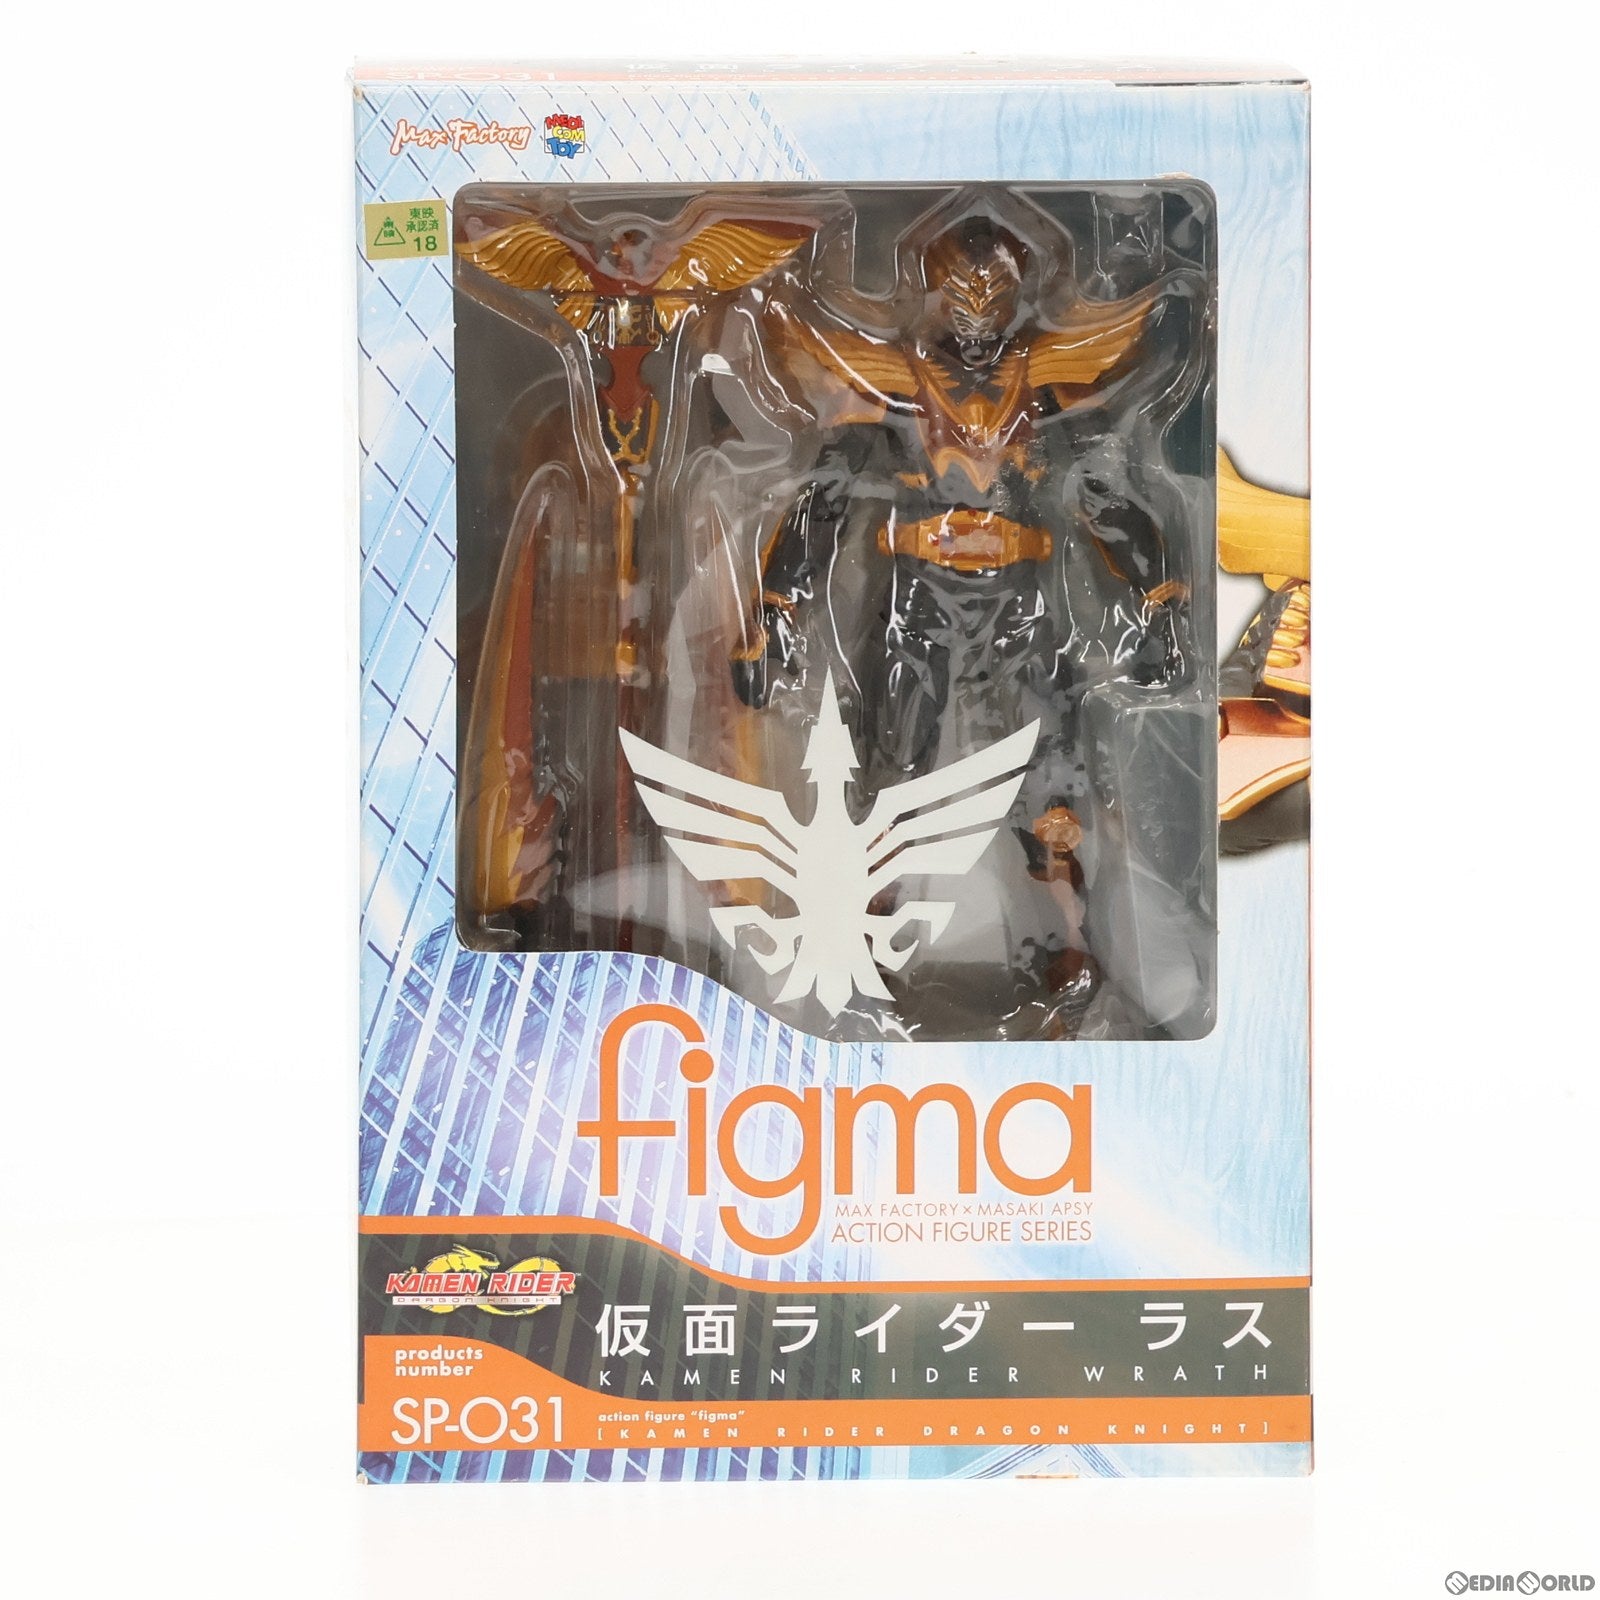 【中古即納】[FIG]figma(フィグマ) SP-031 仮面ライダーラス 仮面ライダードラゴンナイト 完成品 可動フィギュア マックスファクトリー(20110601)